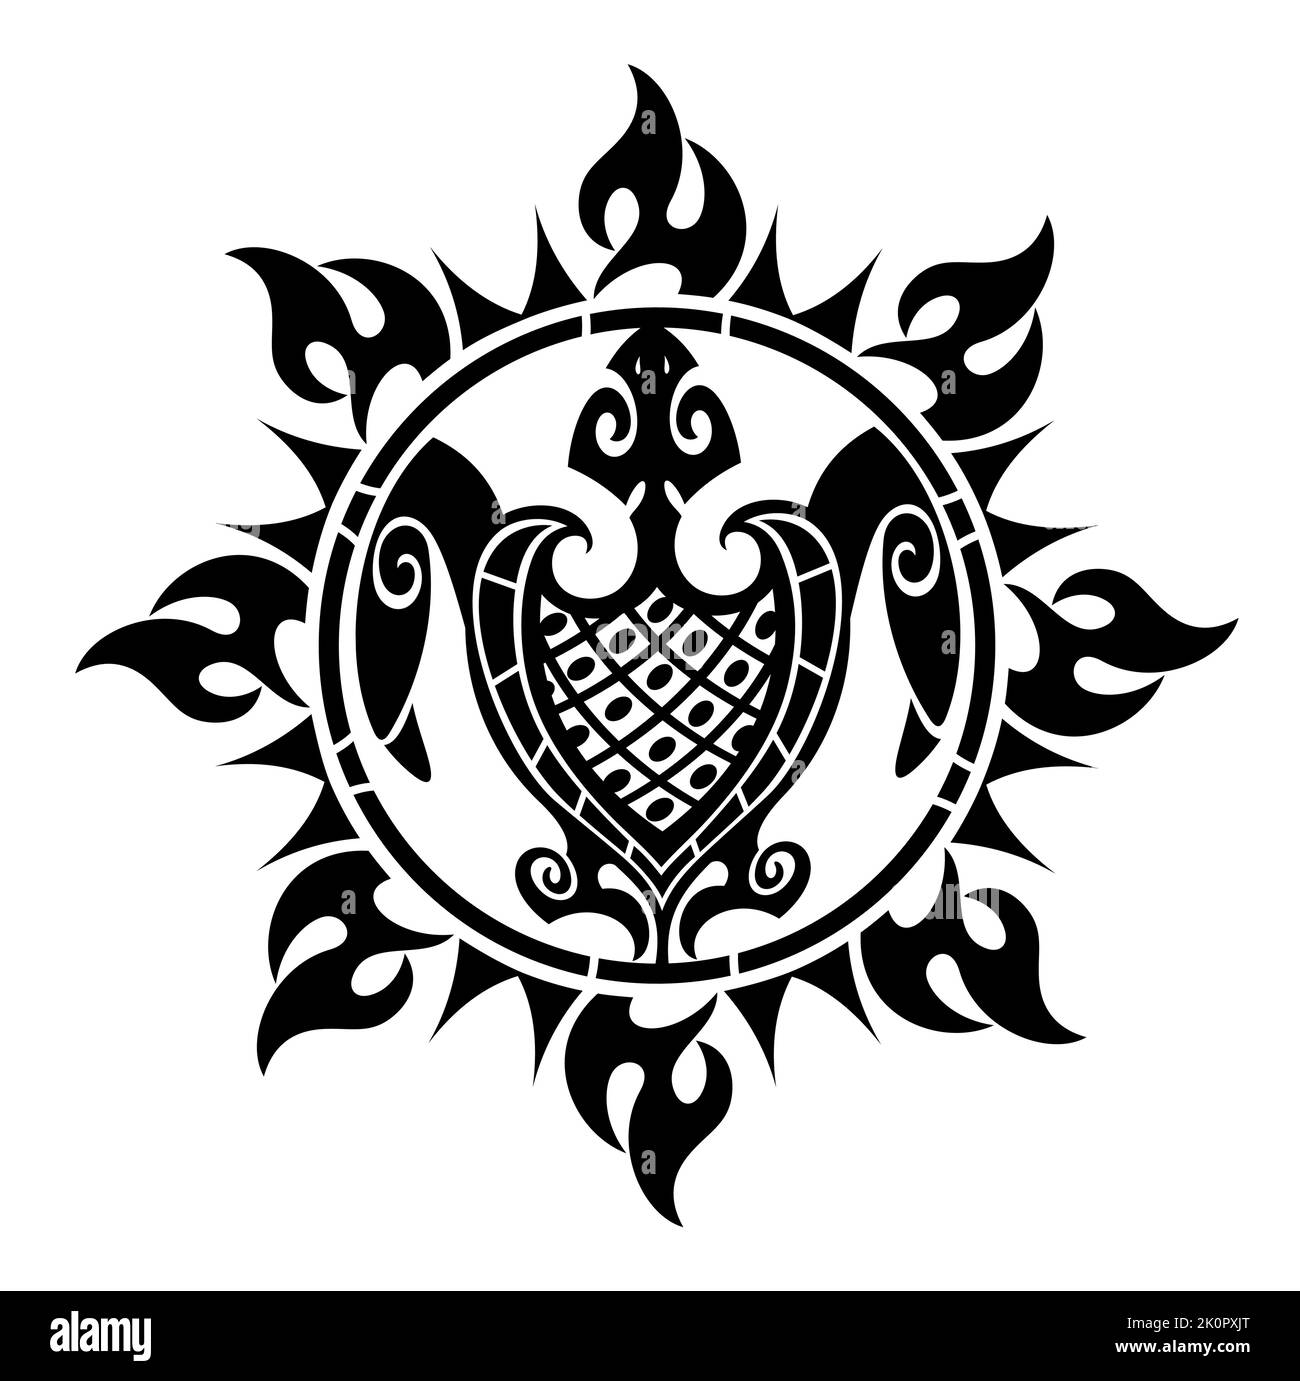 Dekorative Maori Stil Tattoo Schildkröte Illustration. Tattoo Schildkröte Design. Abstract de sign für Tasse, T-Shirt, Handytasche. Ideal für den Druck, Poster, T-s Stock Vektor